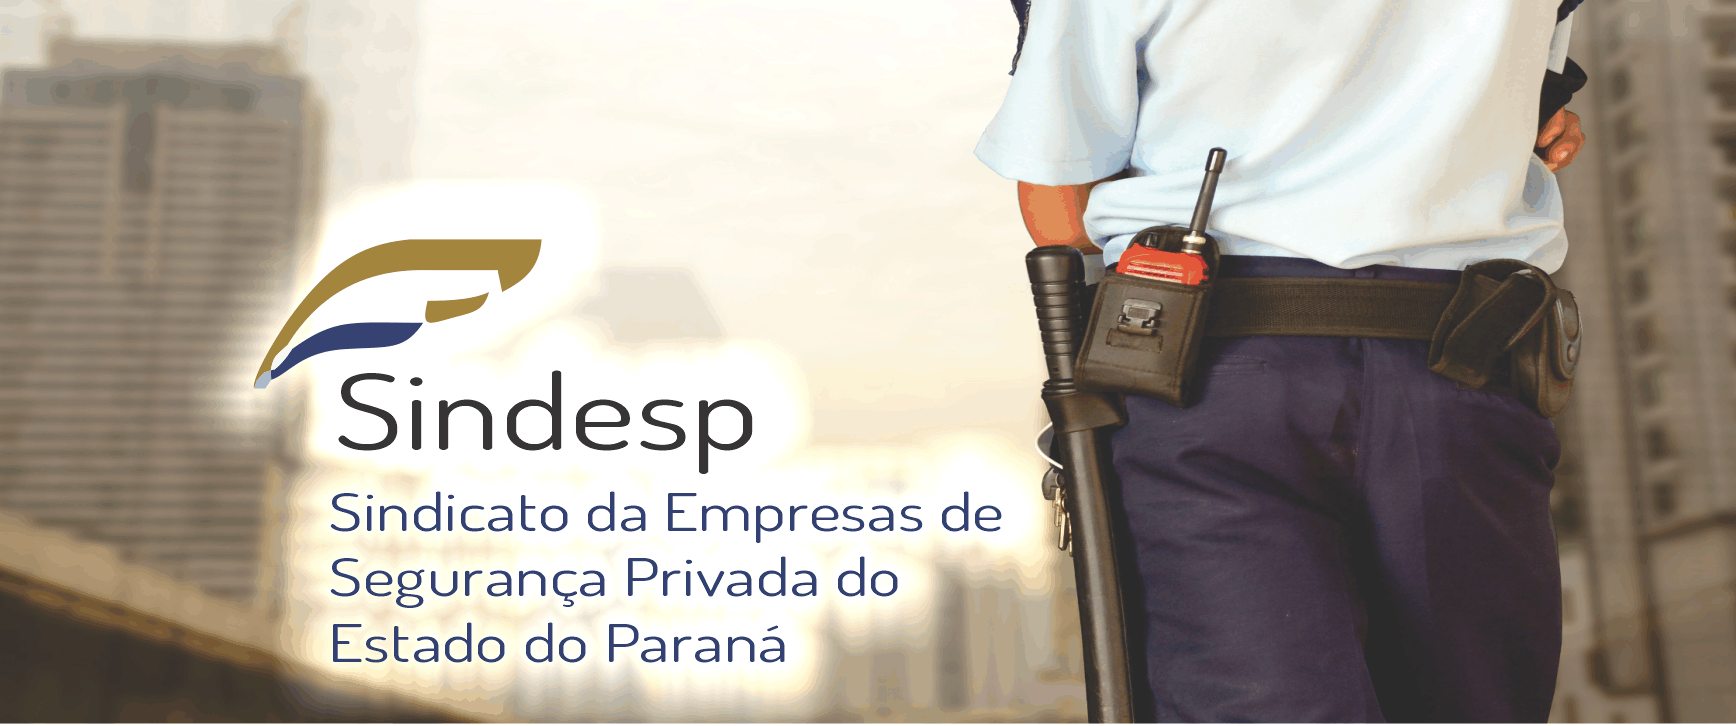 Sindesp Sindicato da Empresas de Segurança Privada do Estado do Paraná     